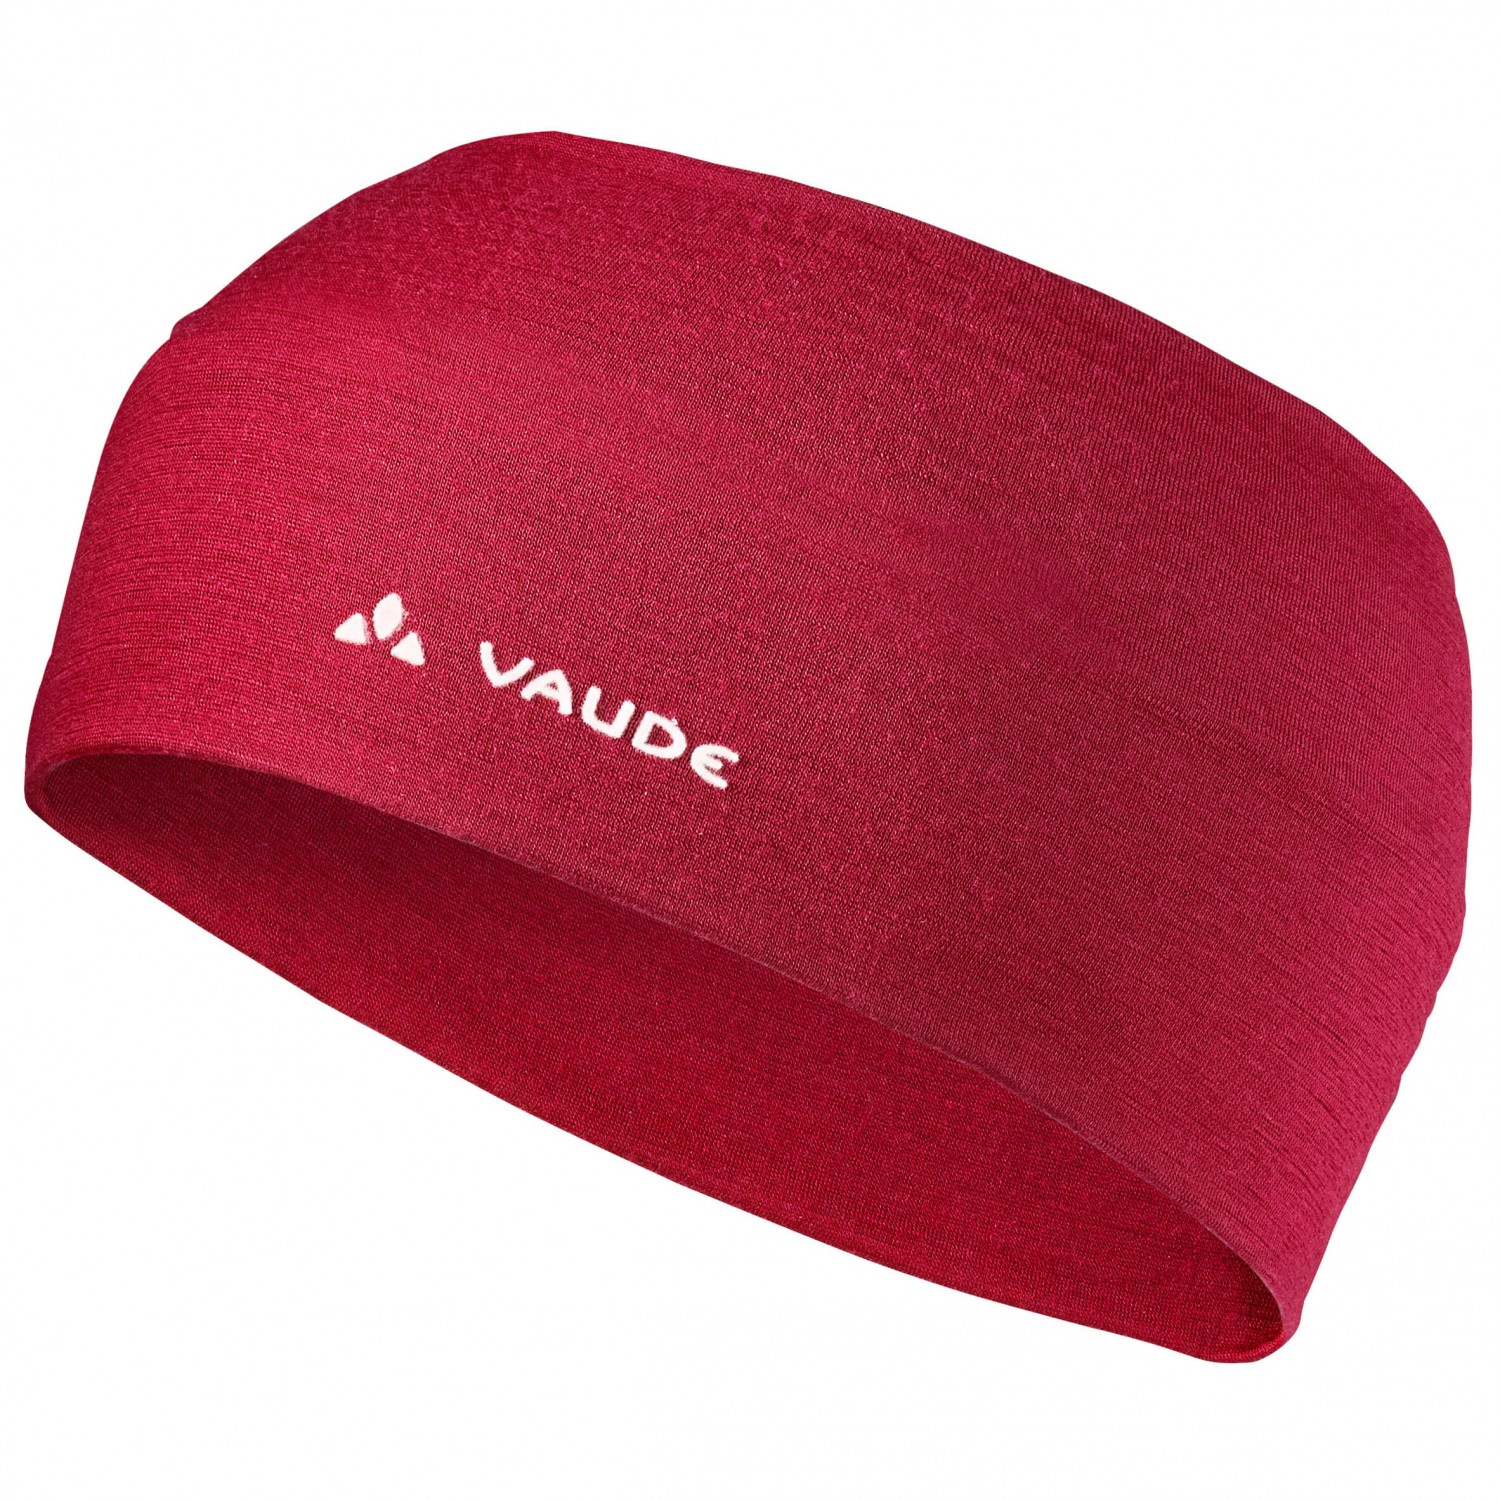 Повязка на голову Vaude Cassons Merino Headband, цвет Dark Indian Red повязка head headband 285085 red